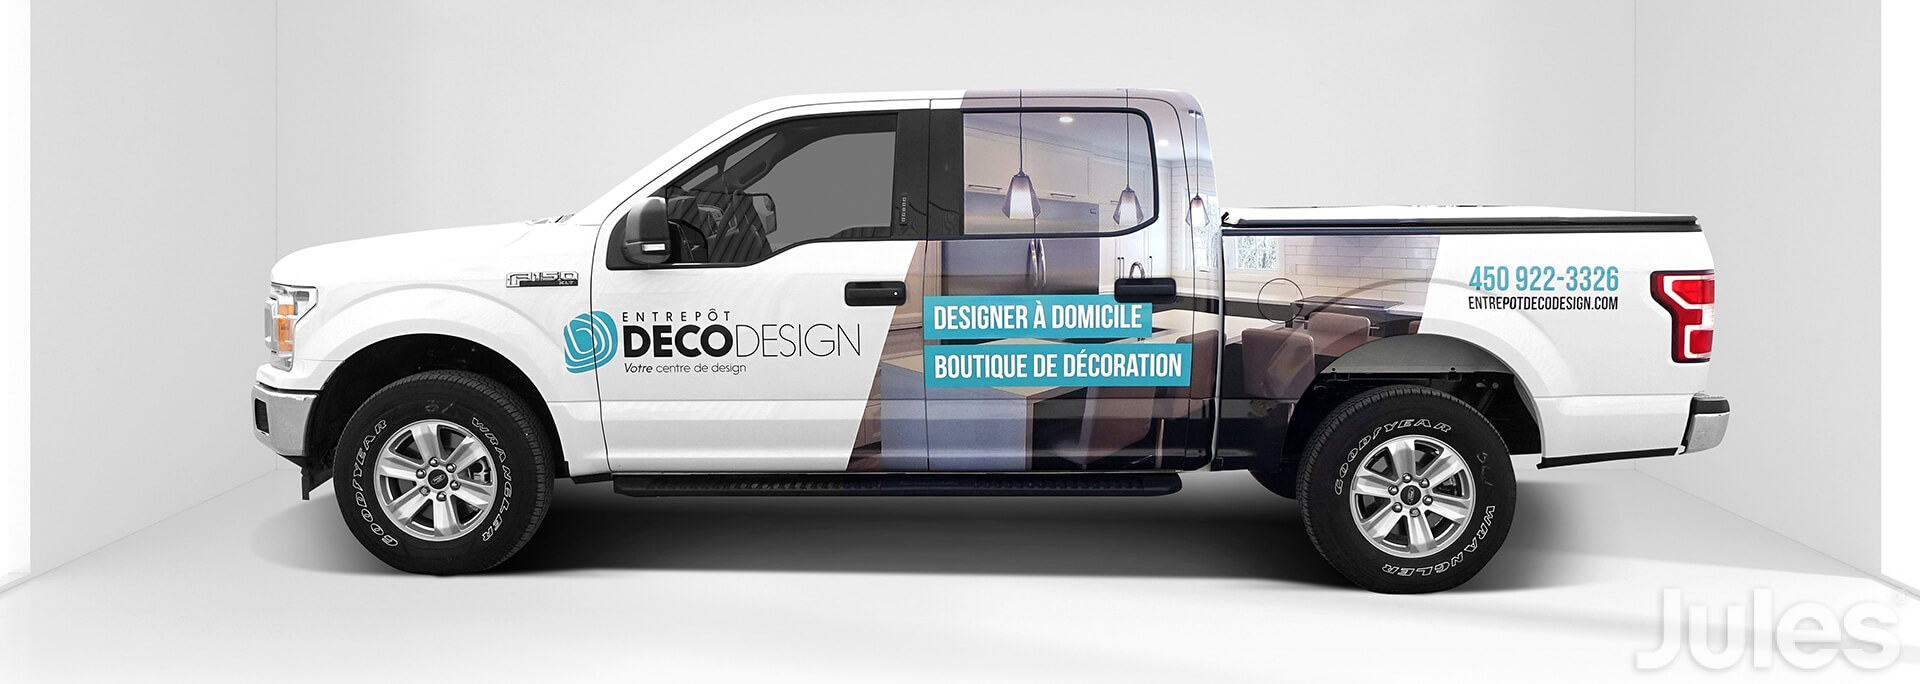 lettrage wrap de camion ford f-150 entrepôt déco design designer à domicile boutique de décoration par jules communications